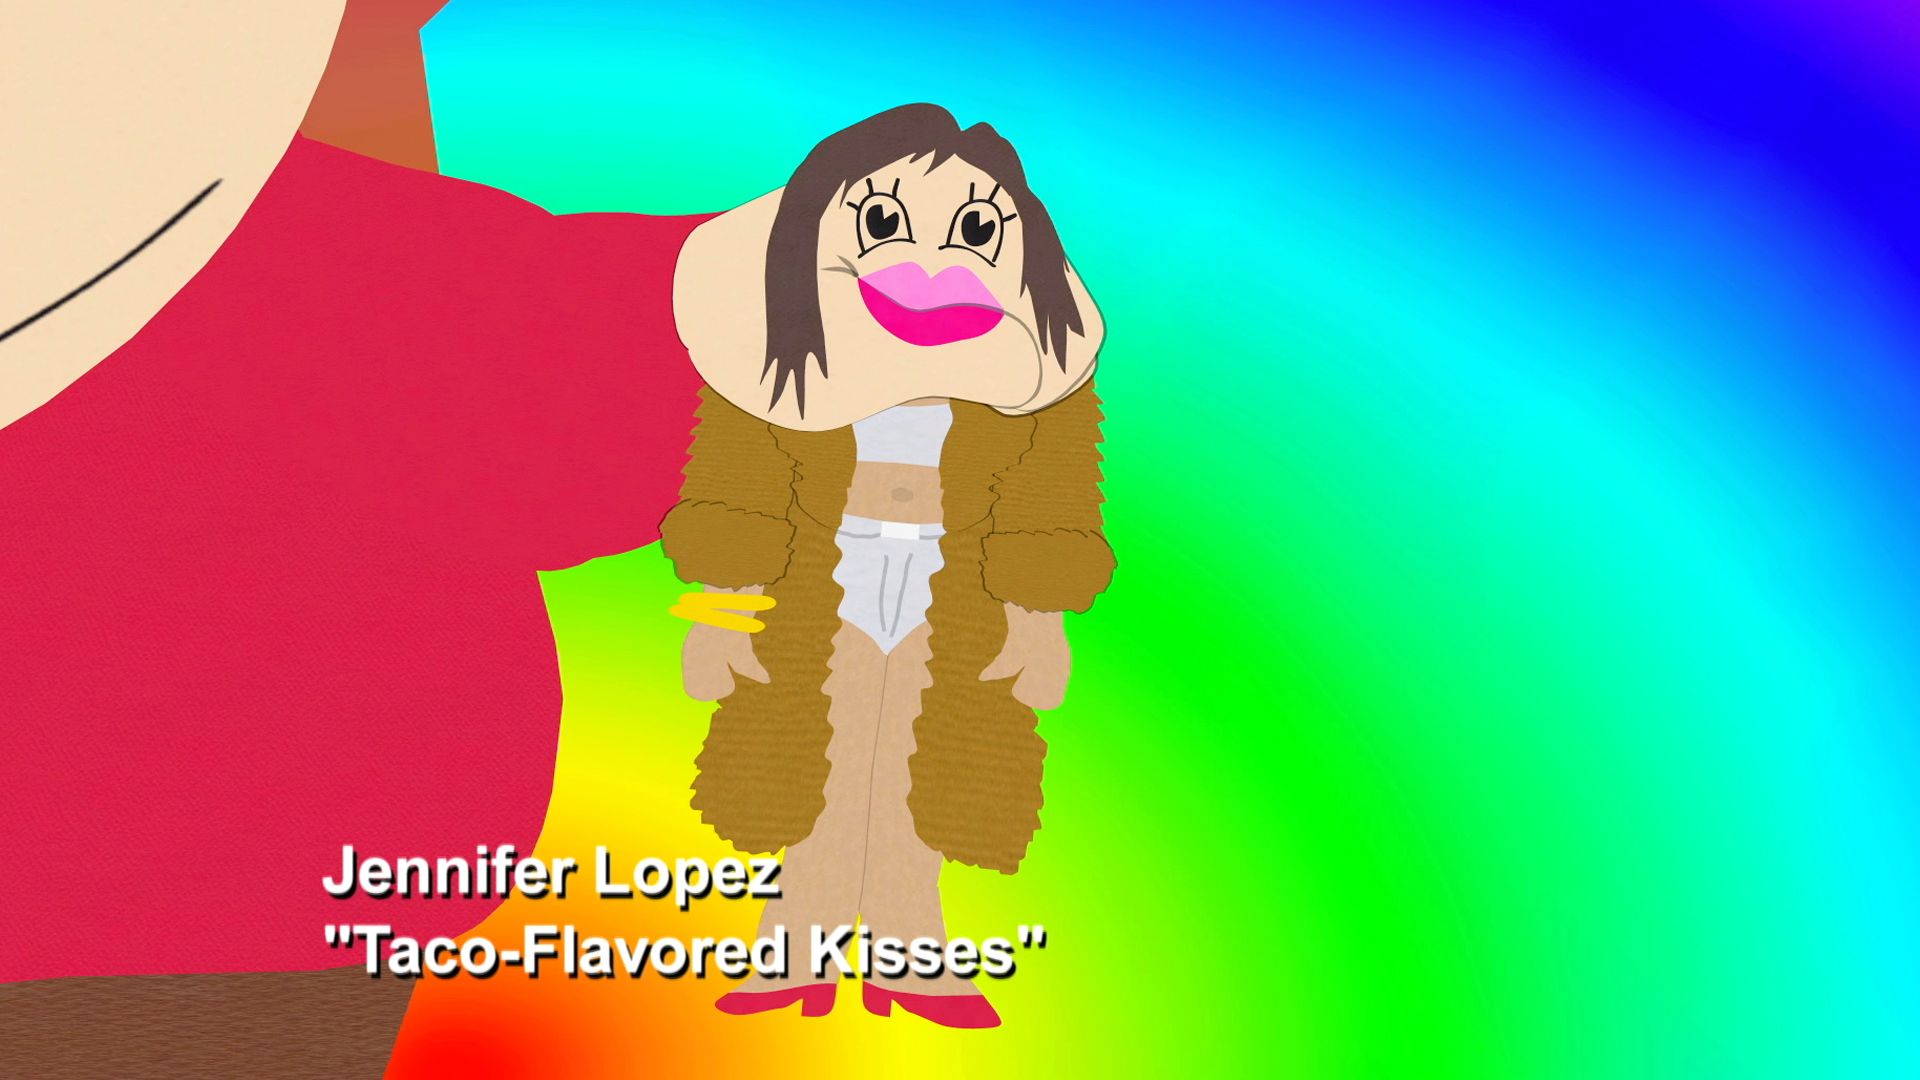 Taco-Flavor Kisses - Season 7 Episode 5 - South Park